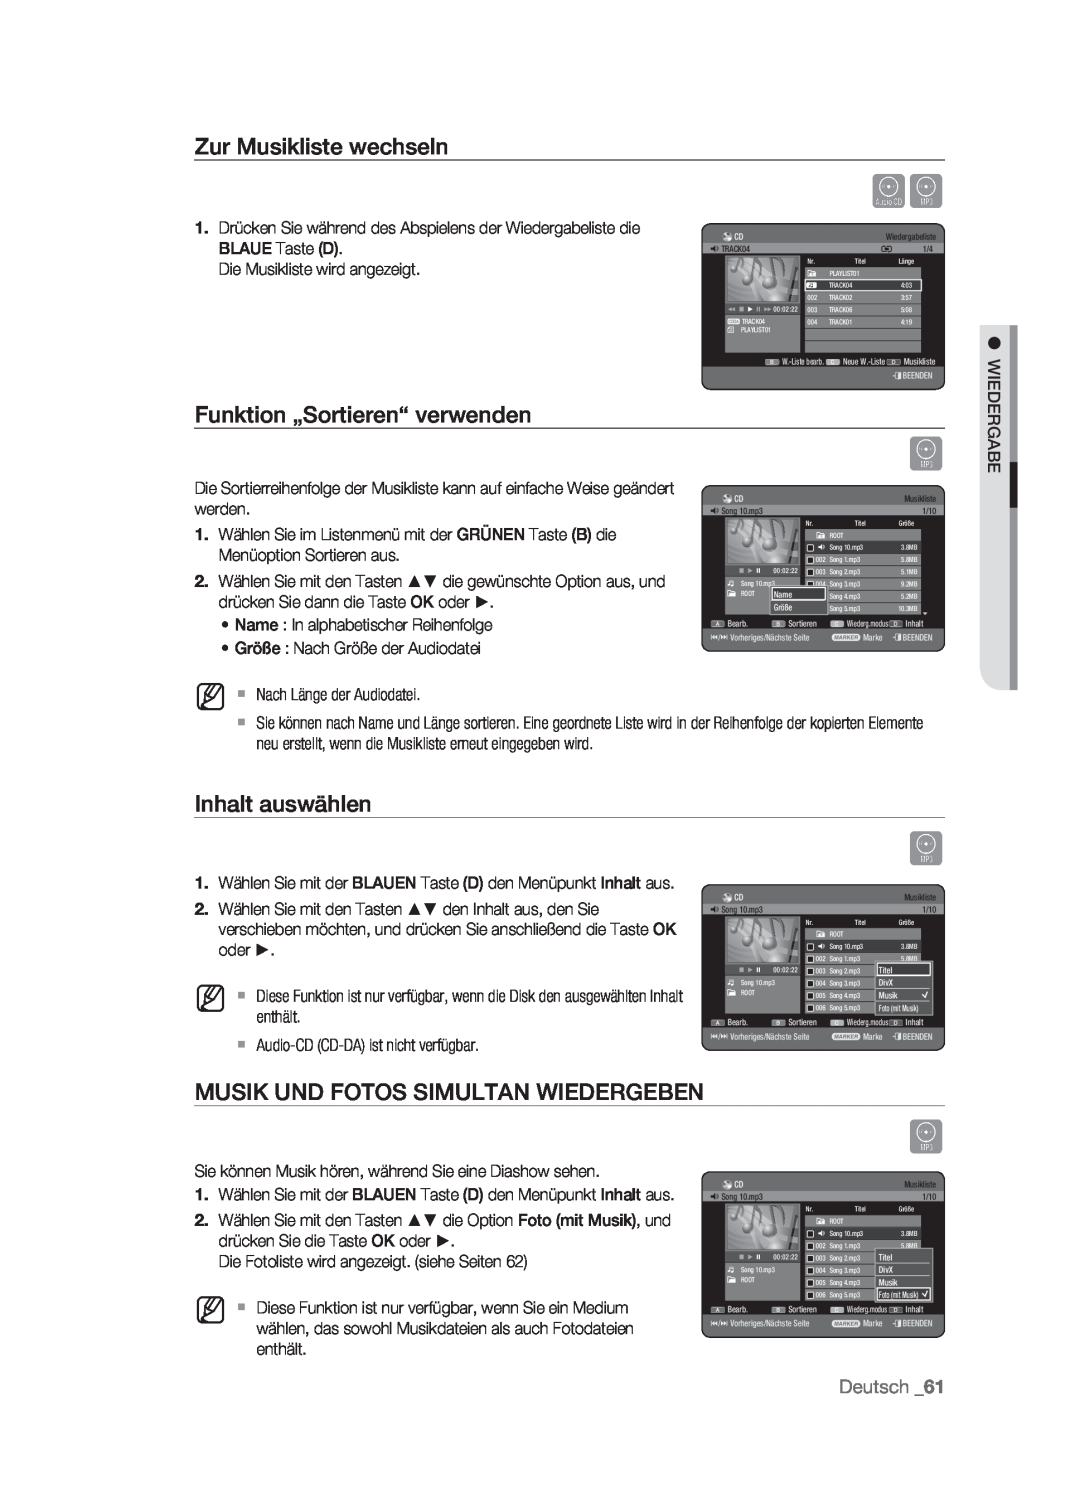 Samsung DVD-HR773/XEB, DVD-HR773/XEN Zur Musikliste wechseln, Funktion „Sortieren“ verwenden, Inhalt auswählen, Deutsch 